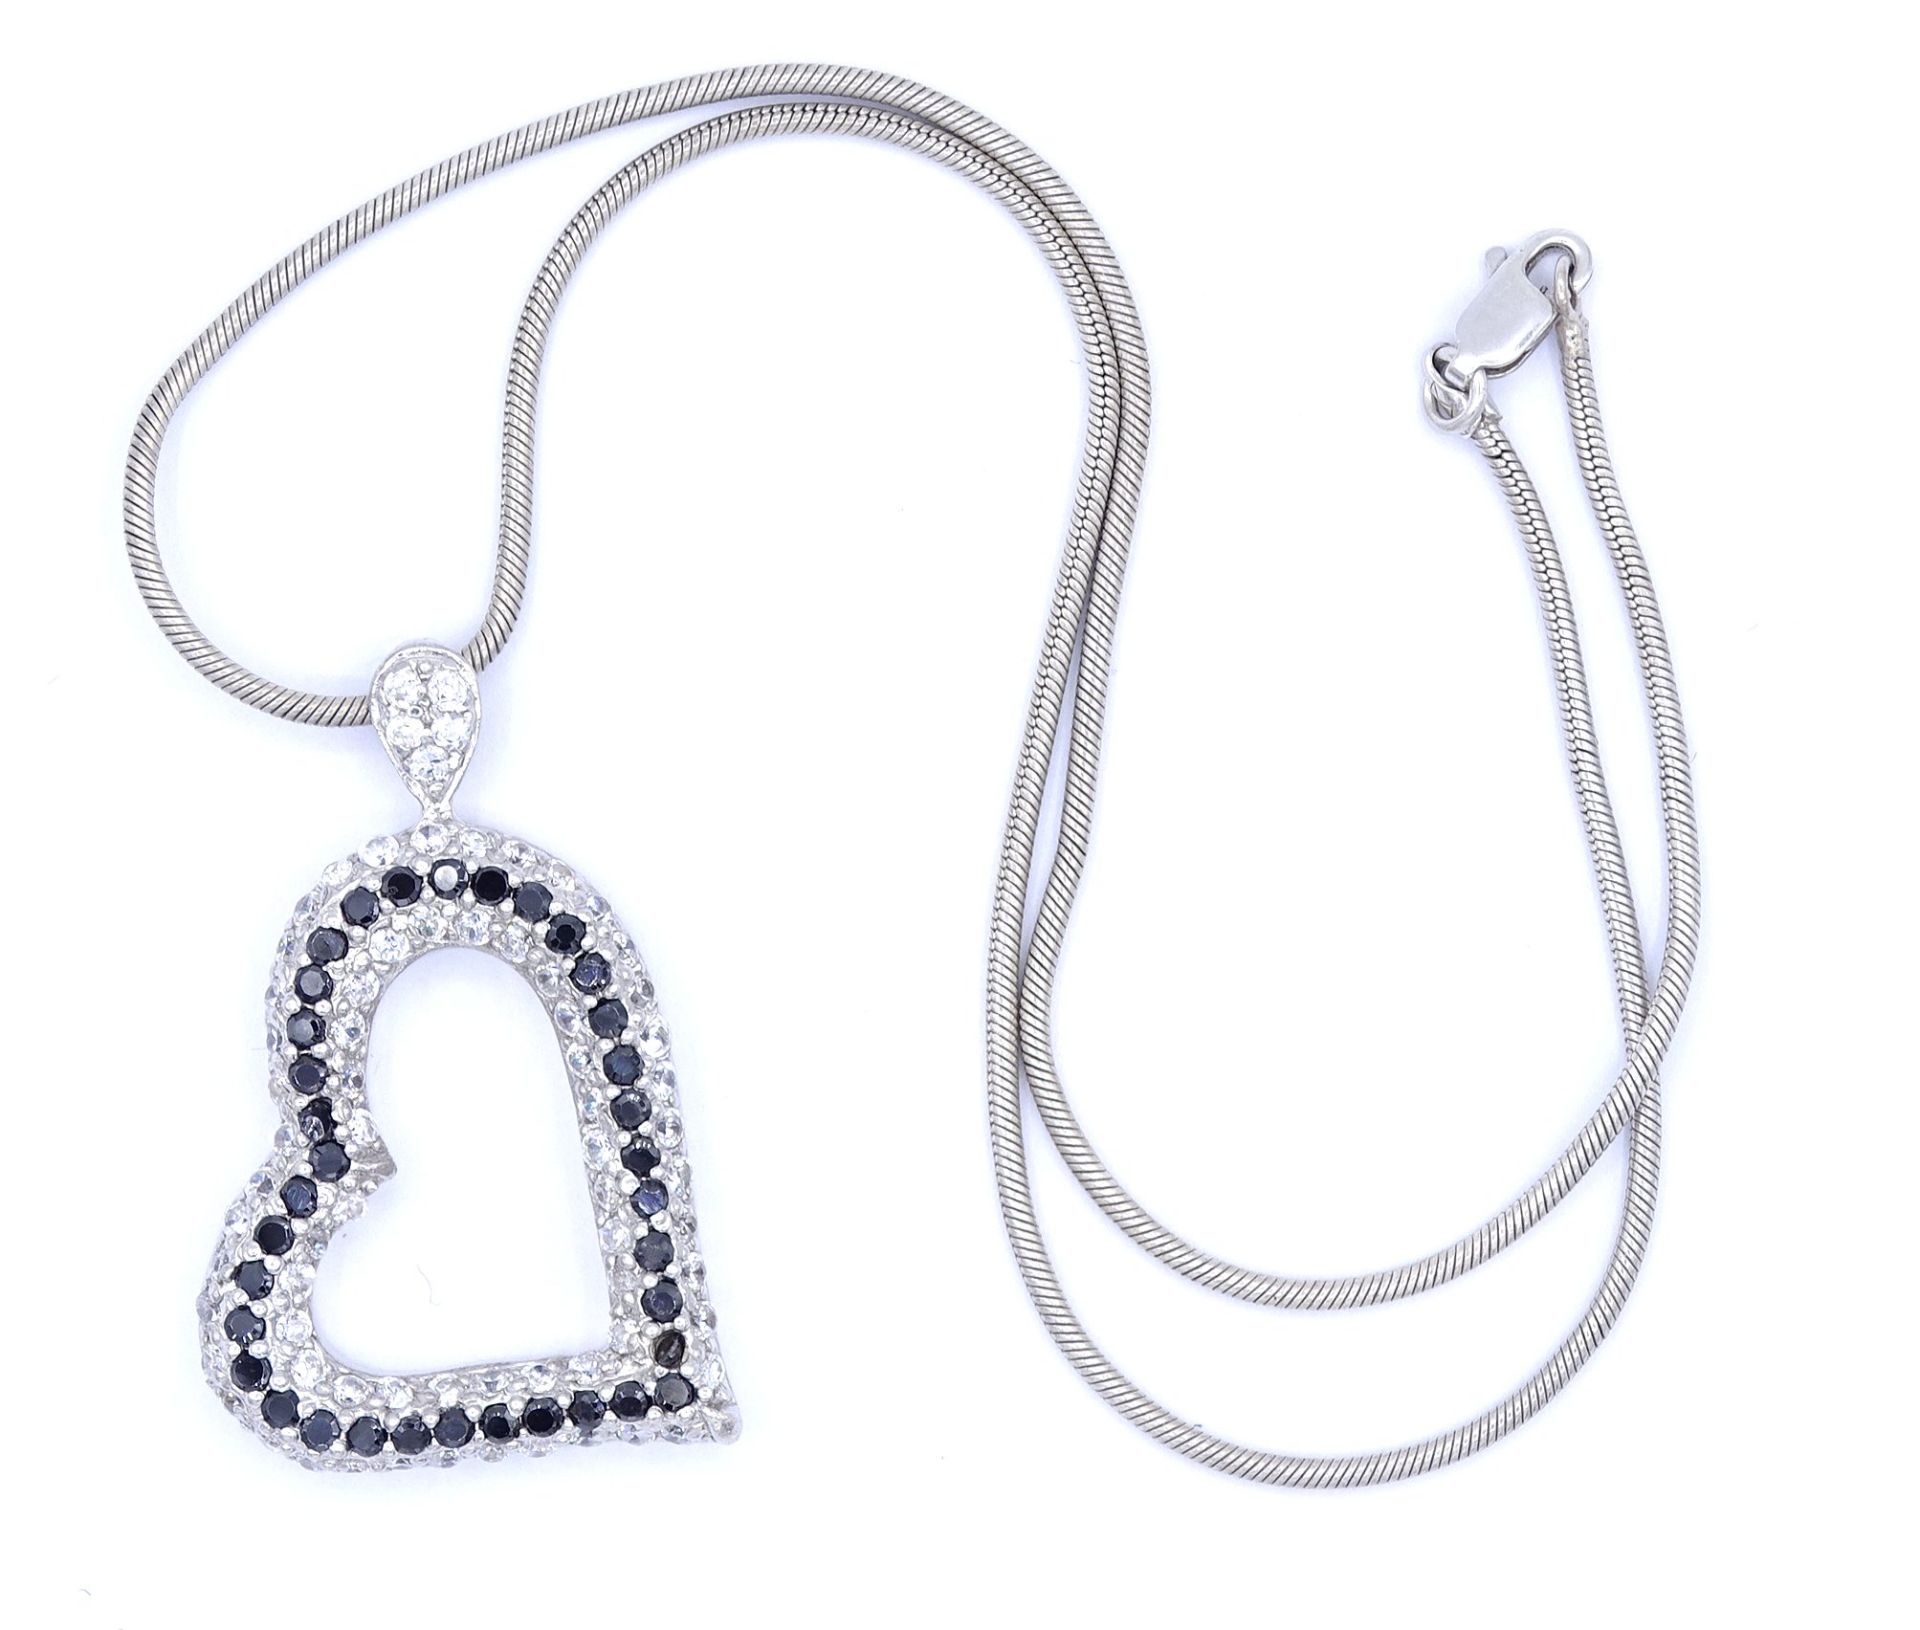 Halskette mit Herzanhänger, Sterlingsilber 925/000, 2x Steine mit Beschädigungen, L. 40,5cm, zus. 2